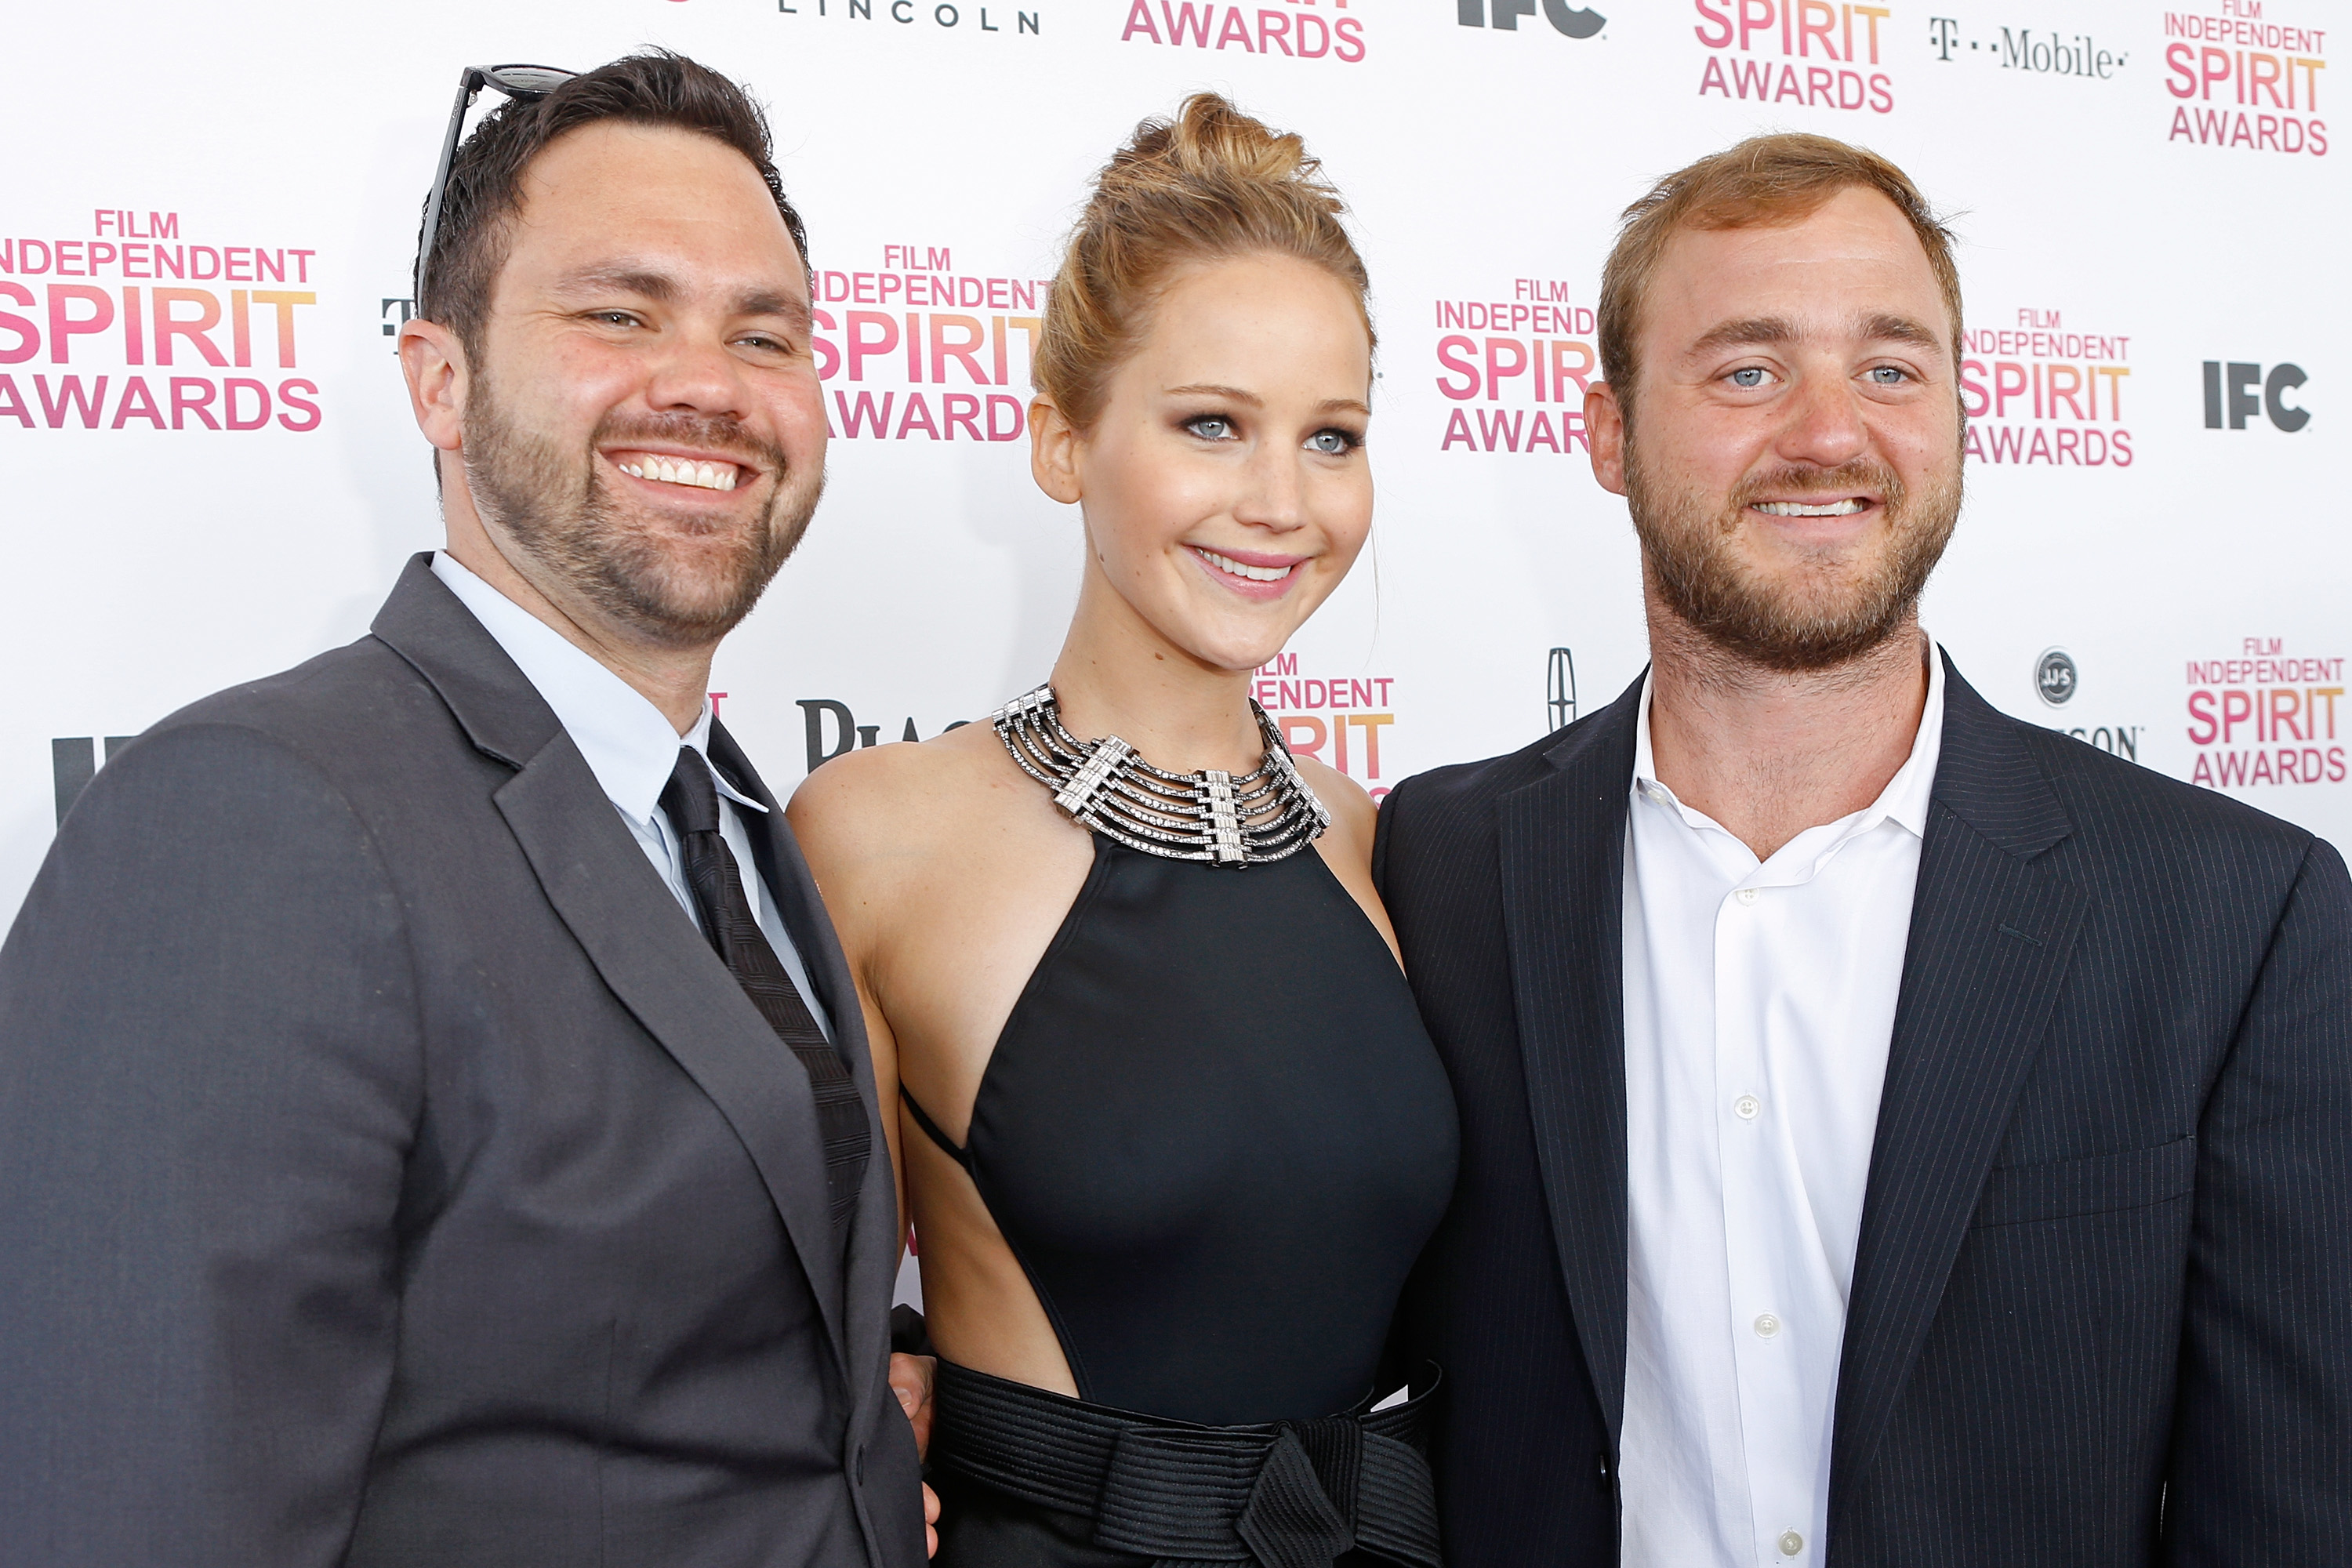 Jennifer Lawrence et ses frères lors de la cérémonie des Film Independent Spirit Awards 2013 à Santa Monica, en Californie. | Source : Getty Images